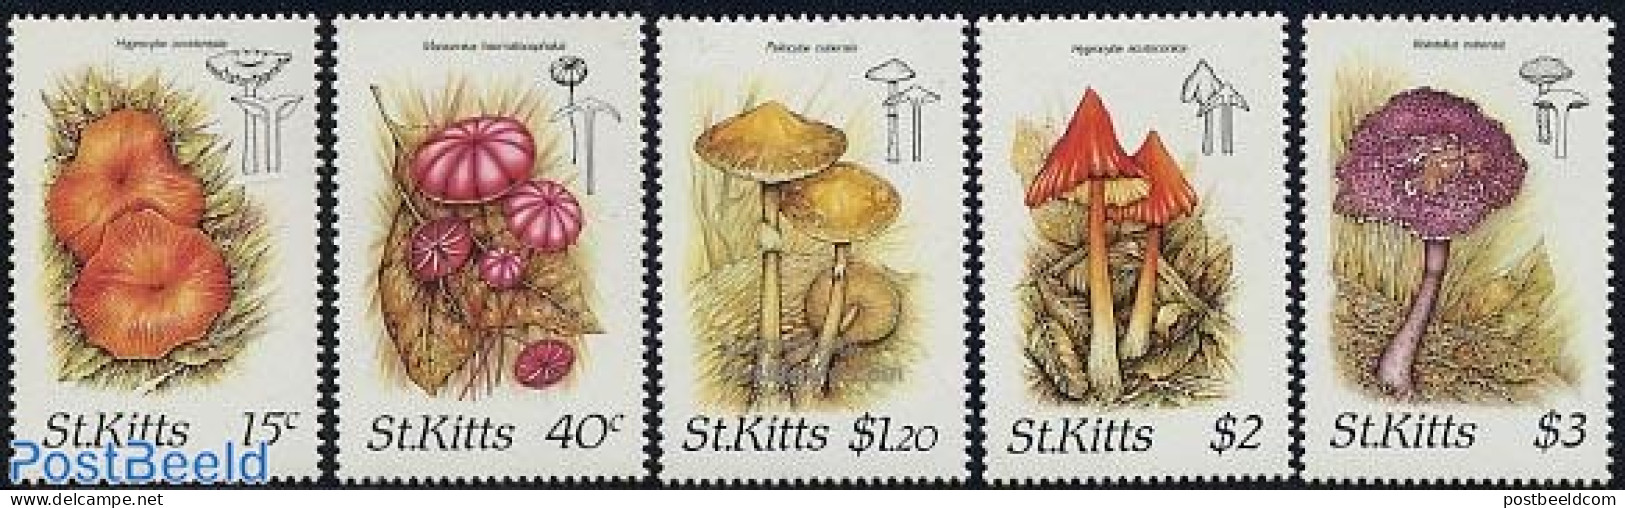 Saint Kitts/Nevis 1987 Mushrooms 5v, Mint NH, Nature - Mushrooms - Mushrooms